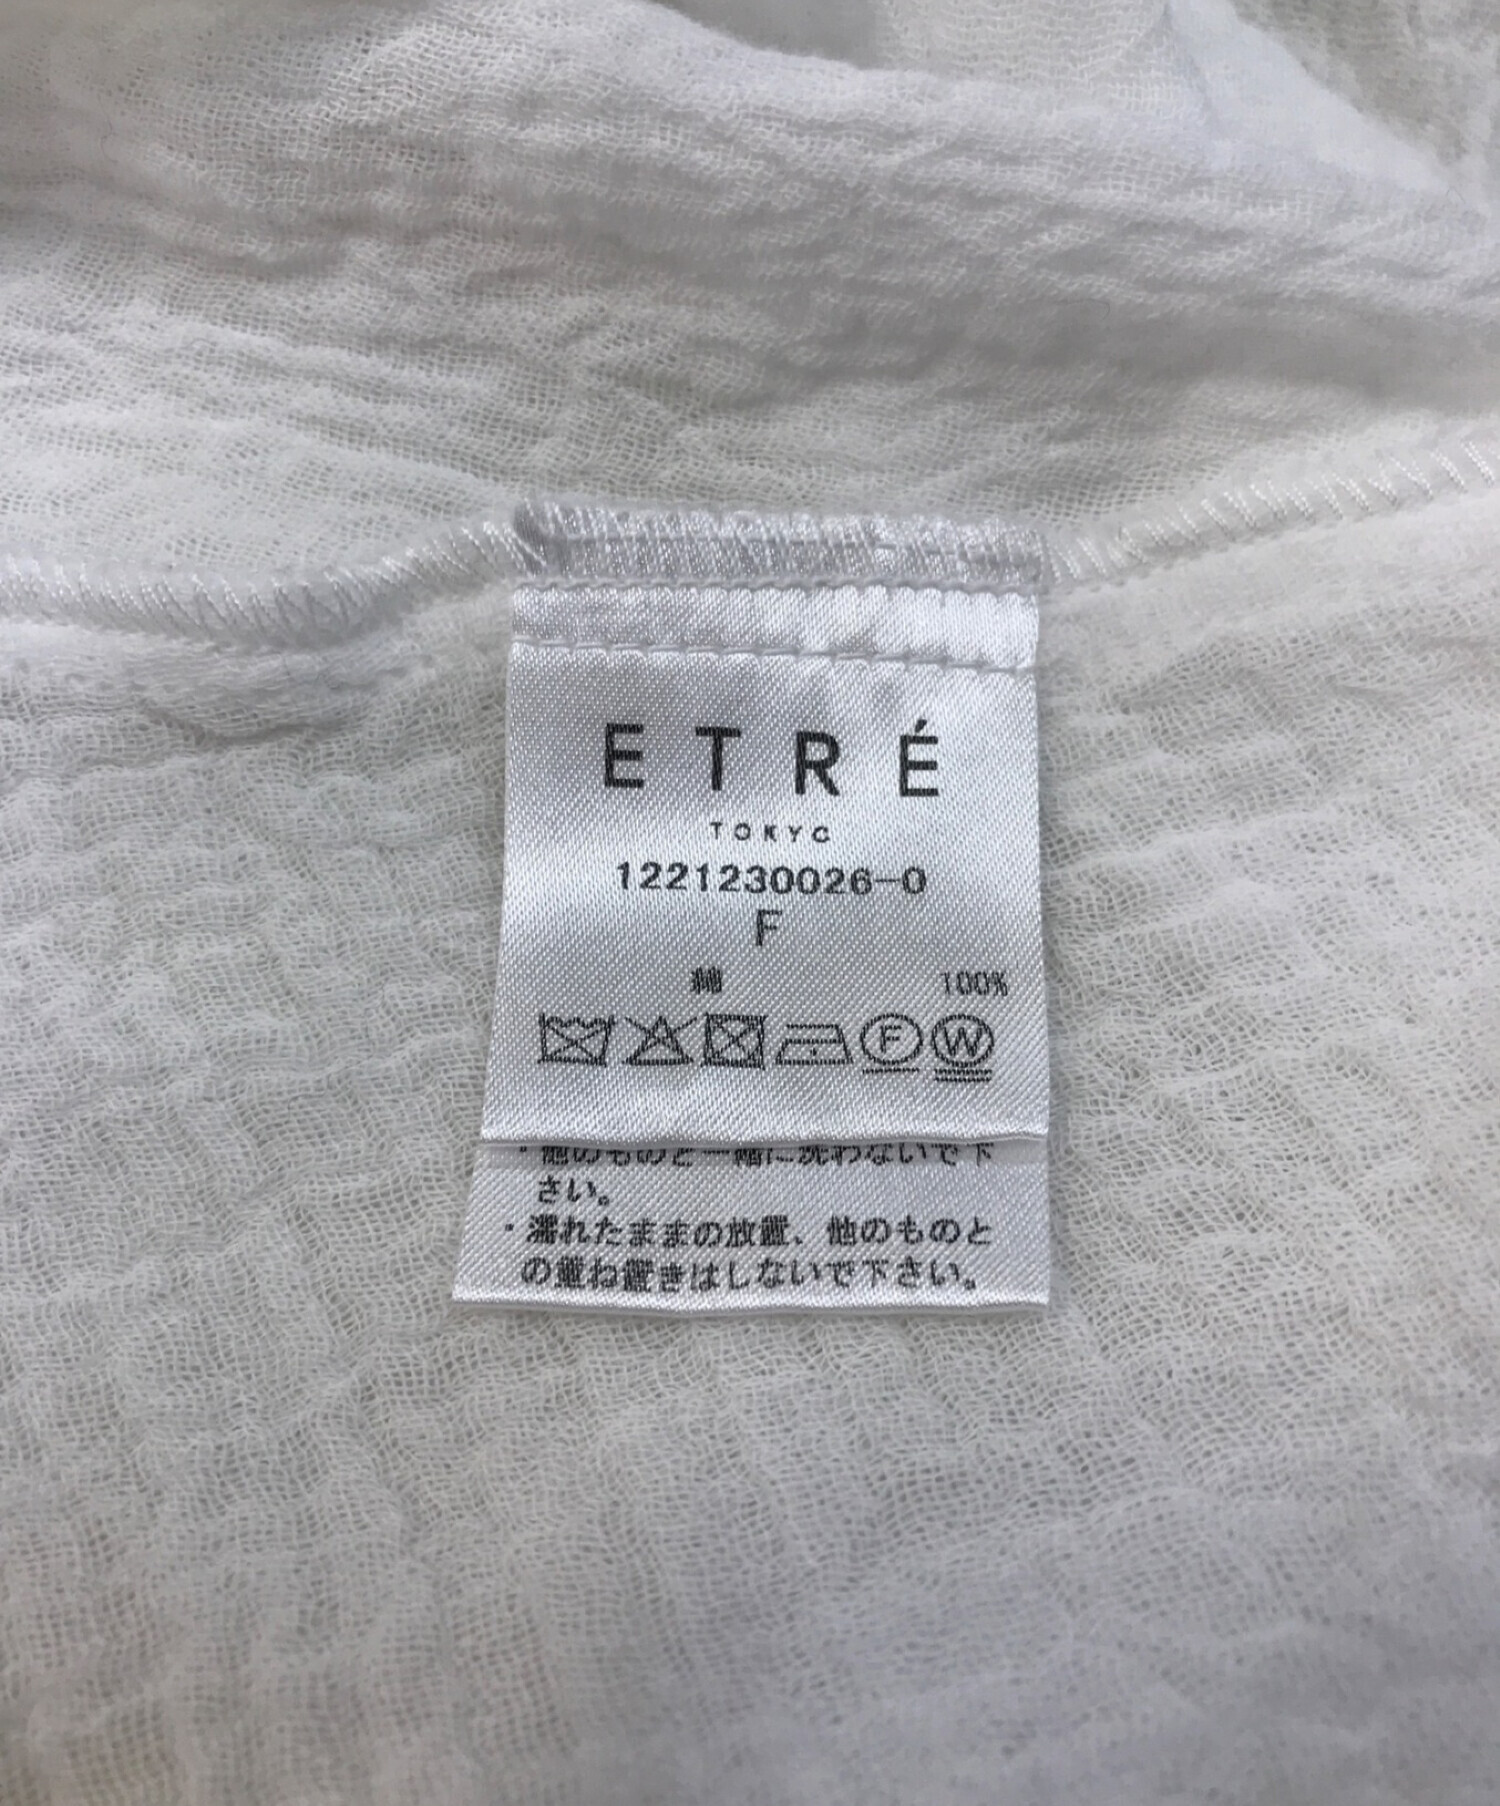 ETRE TOKYO (エトレトウキョウ) ダブルガーゼラダーレースワンピース 1221230026-0 ホワイト サイズ:F 未使用品